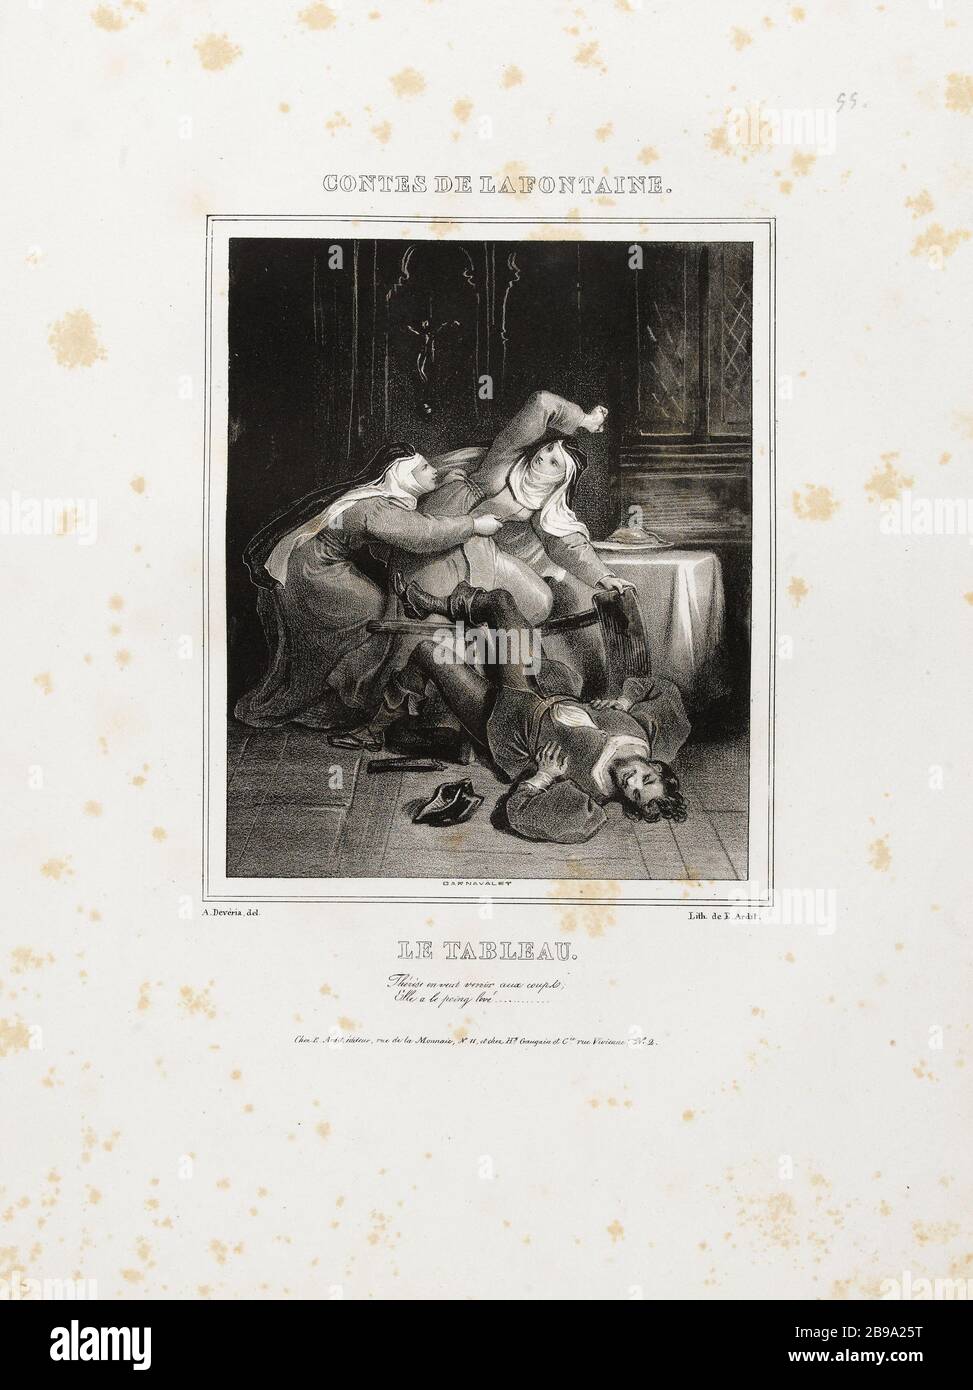 Album Tales de Jean de la Fontaine: La peinture. Achille Devéria (1800-1857) et E. Ardit. Album des Contes de Jean de la Fontaine : le tableau. Lithographie, 1830. Paris, musée Carnavalet. Banque D'Images